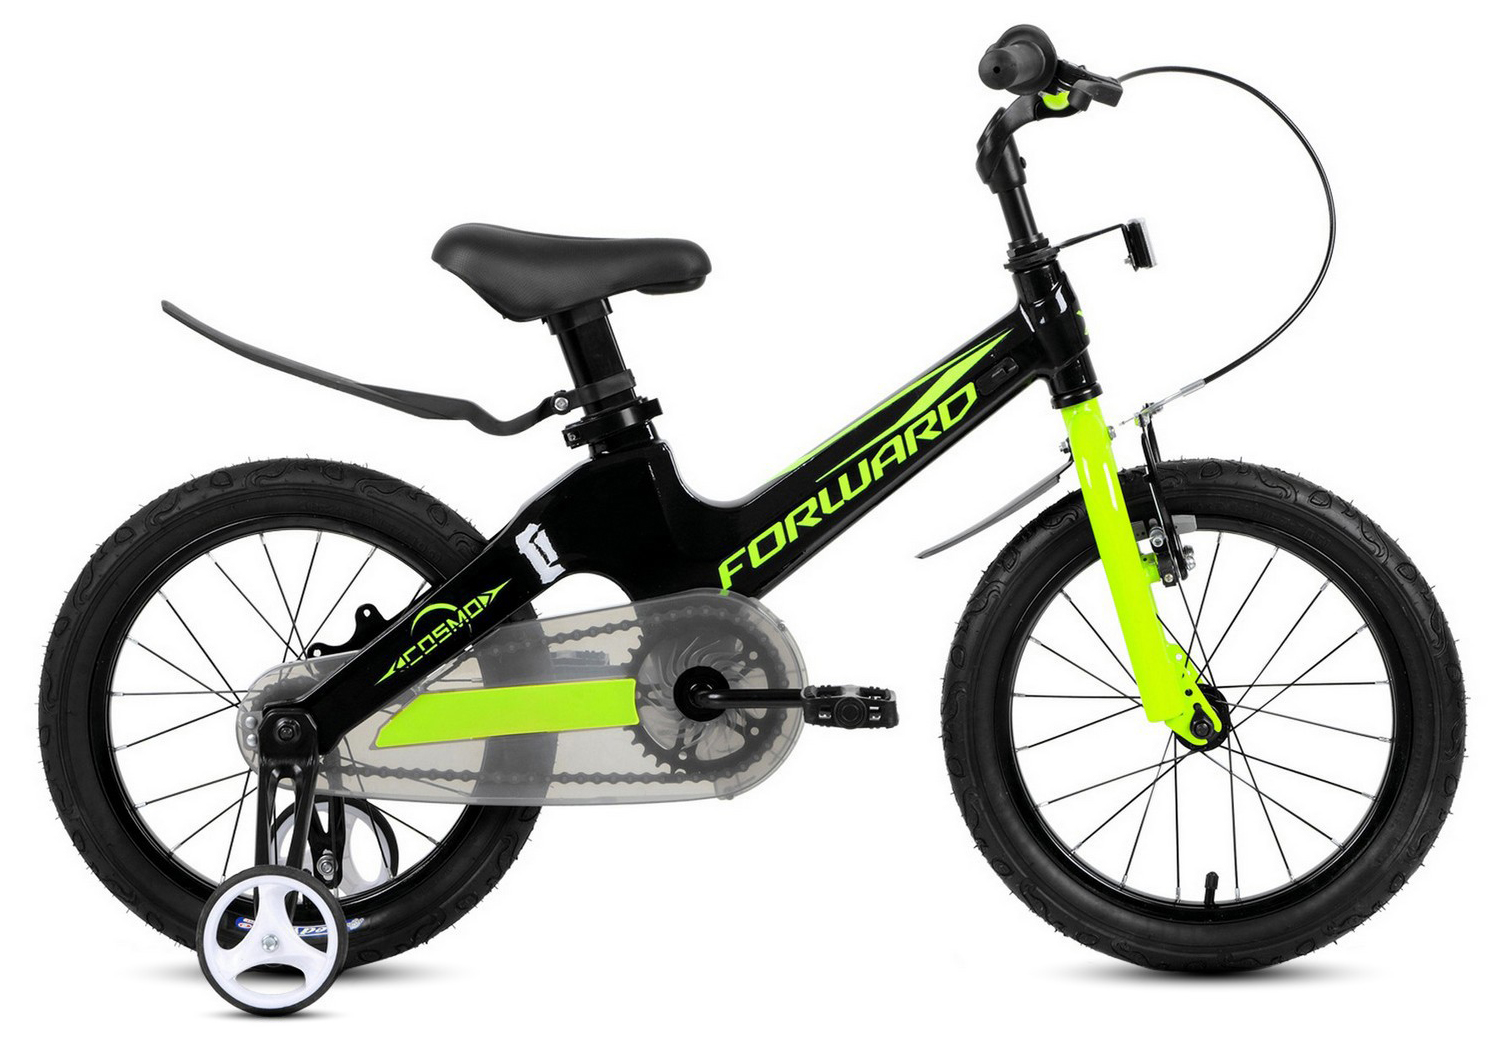  Отзывы о Детском велосипеде Forward Cosmo 16 (2021) 2021